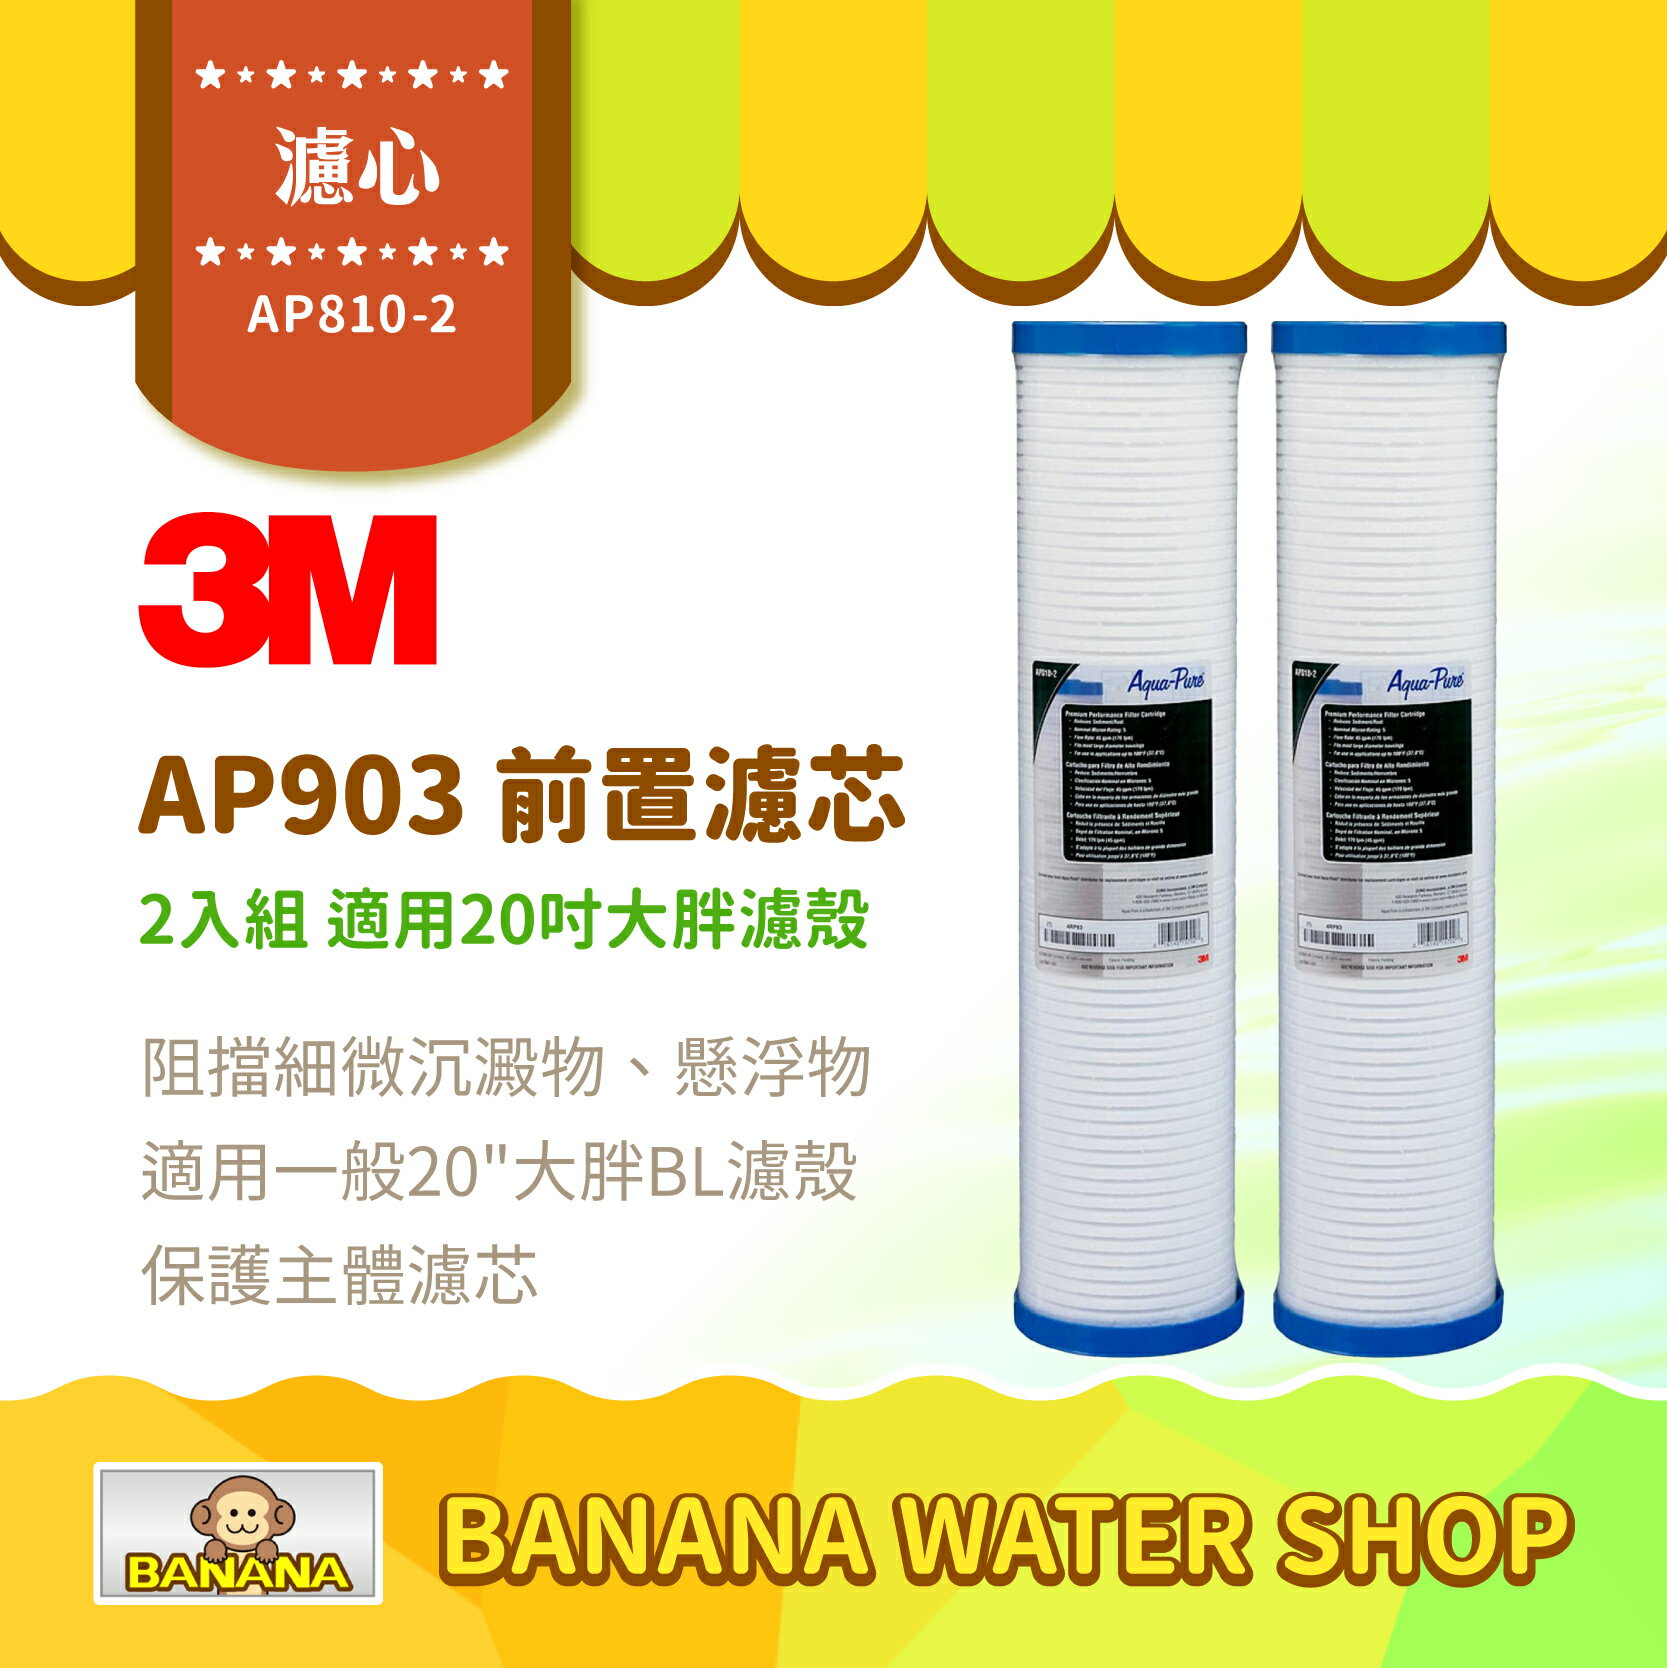 【3M】AP810-2 濾心 2入組合 全戶式淨水系統 AP903 前置保護濾芯 20吋大胖濾殼可用